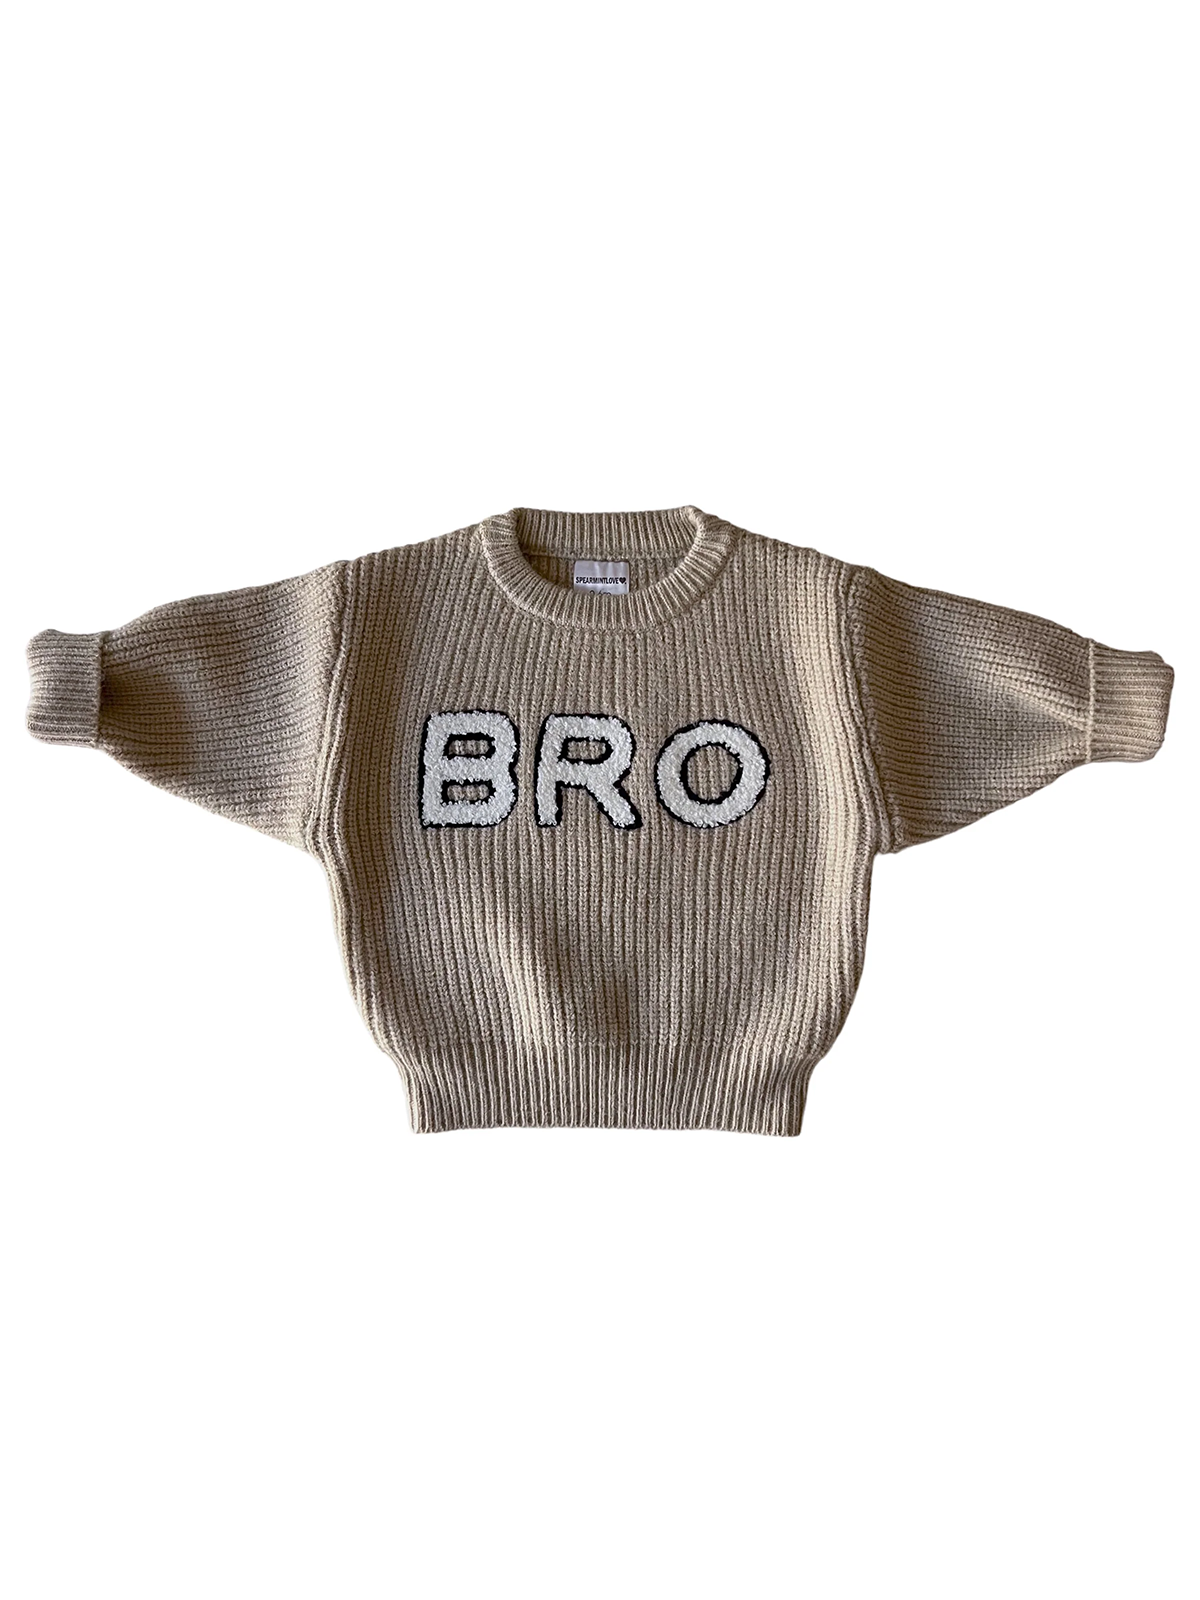 Bro Knit Sweater, Cocoa